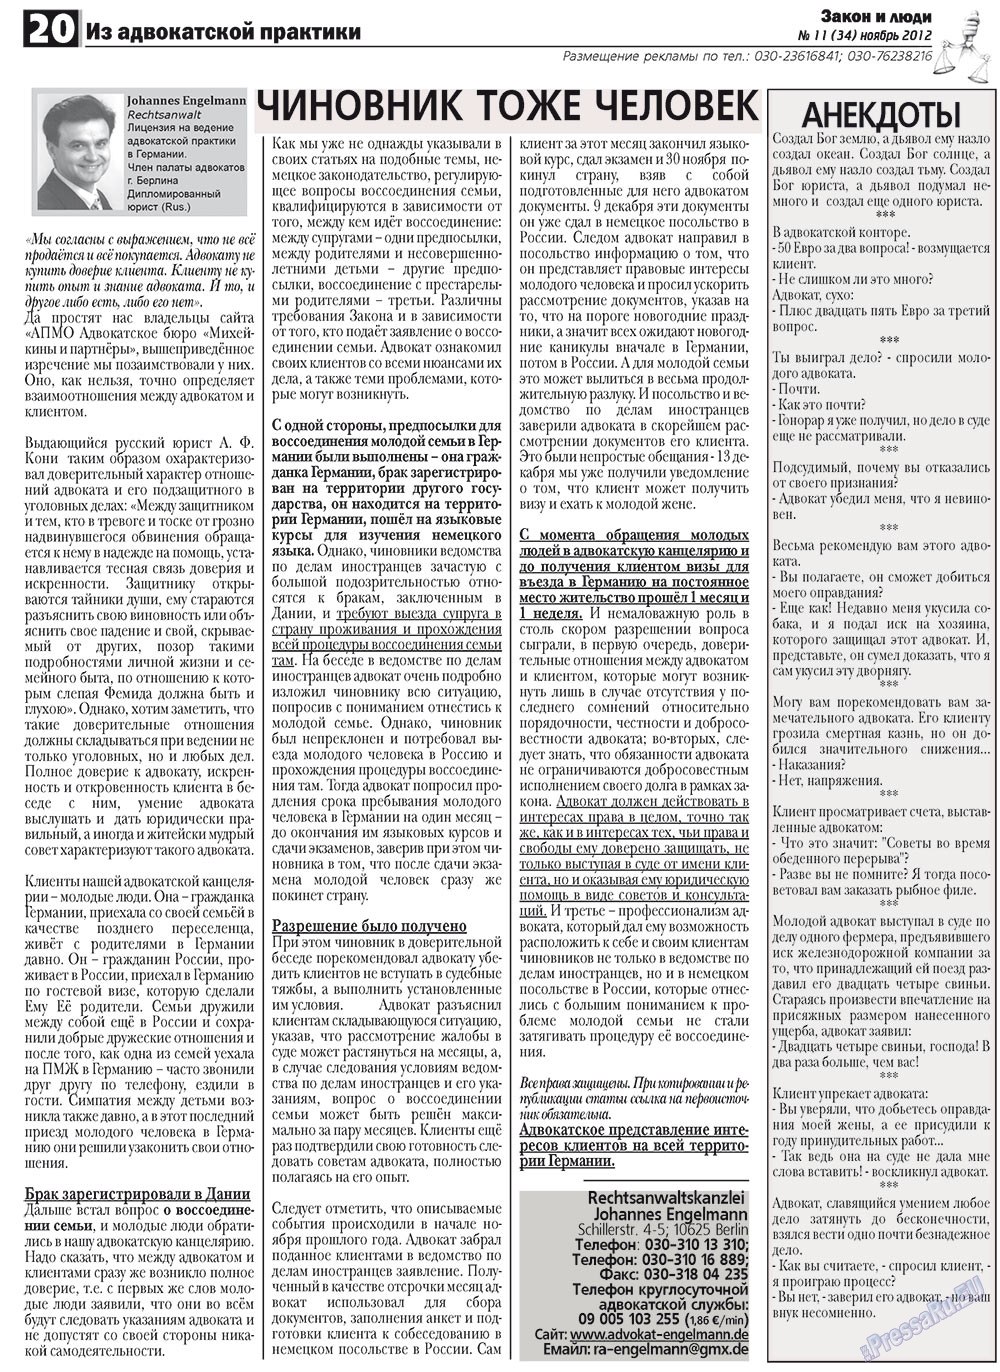 Закон и люди, газета. 2012 №11 стр.20